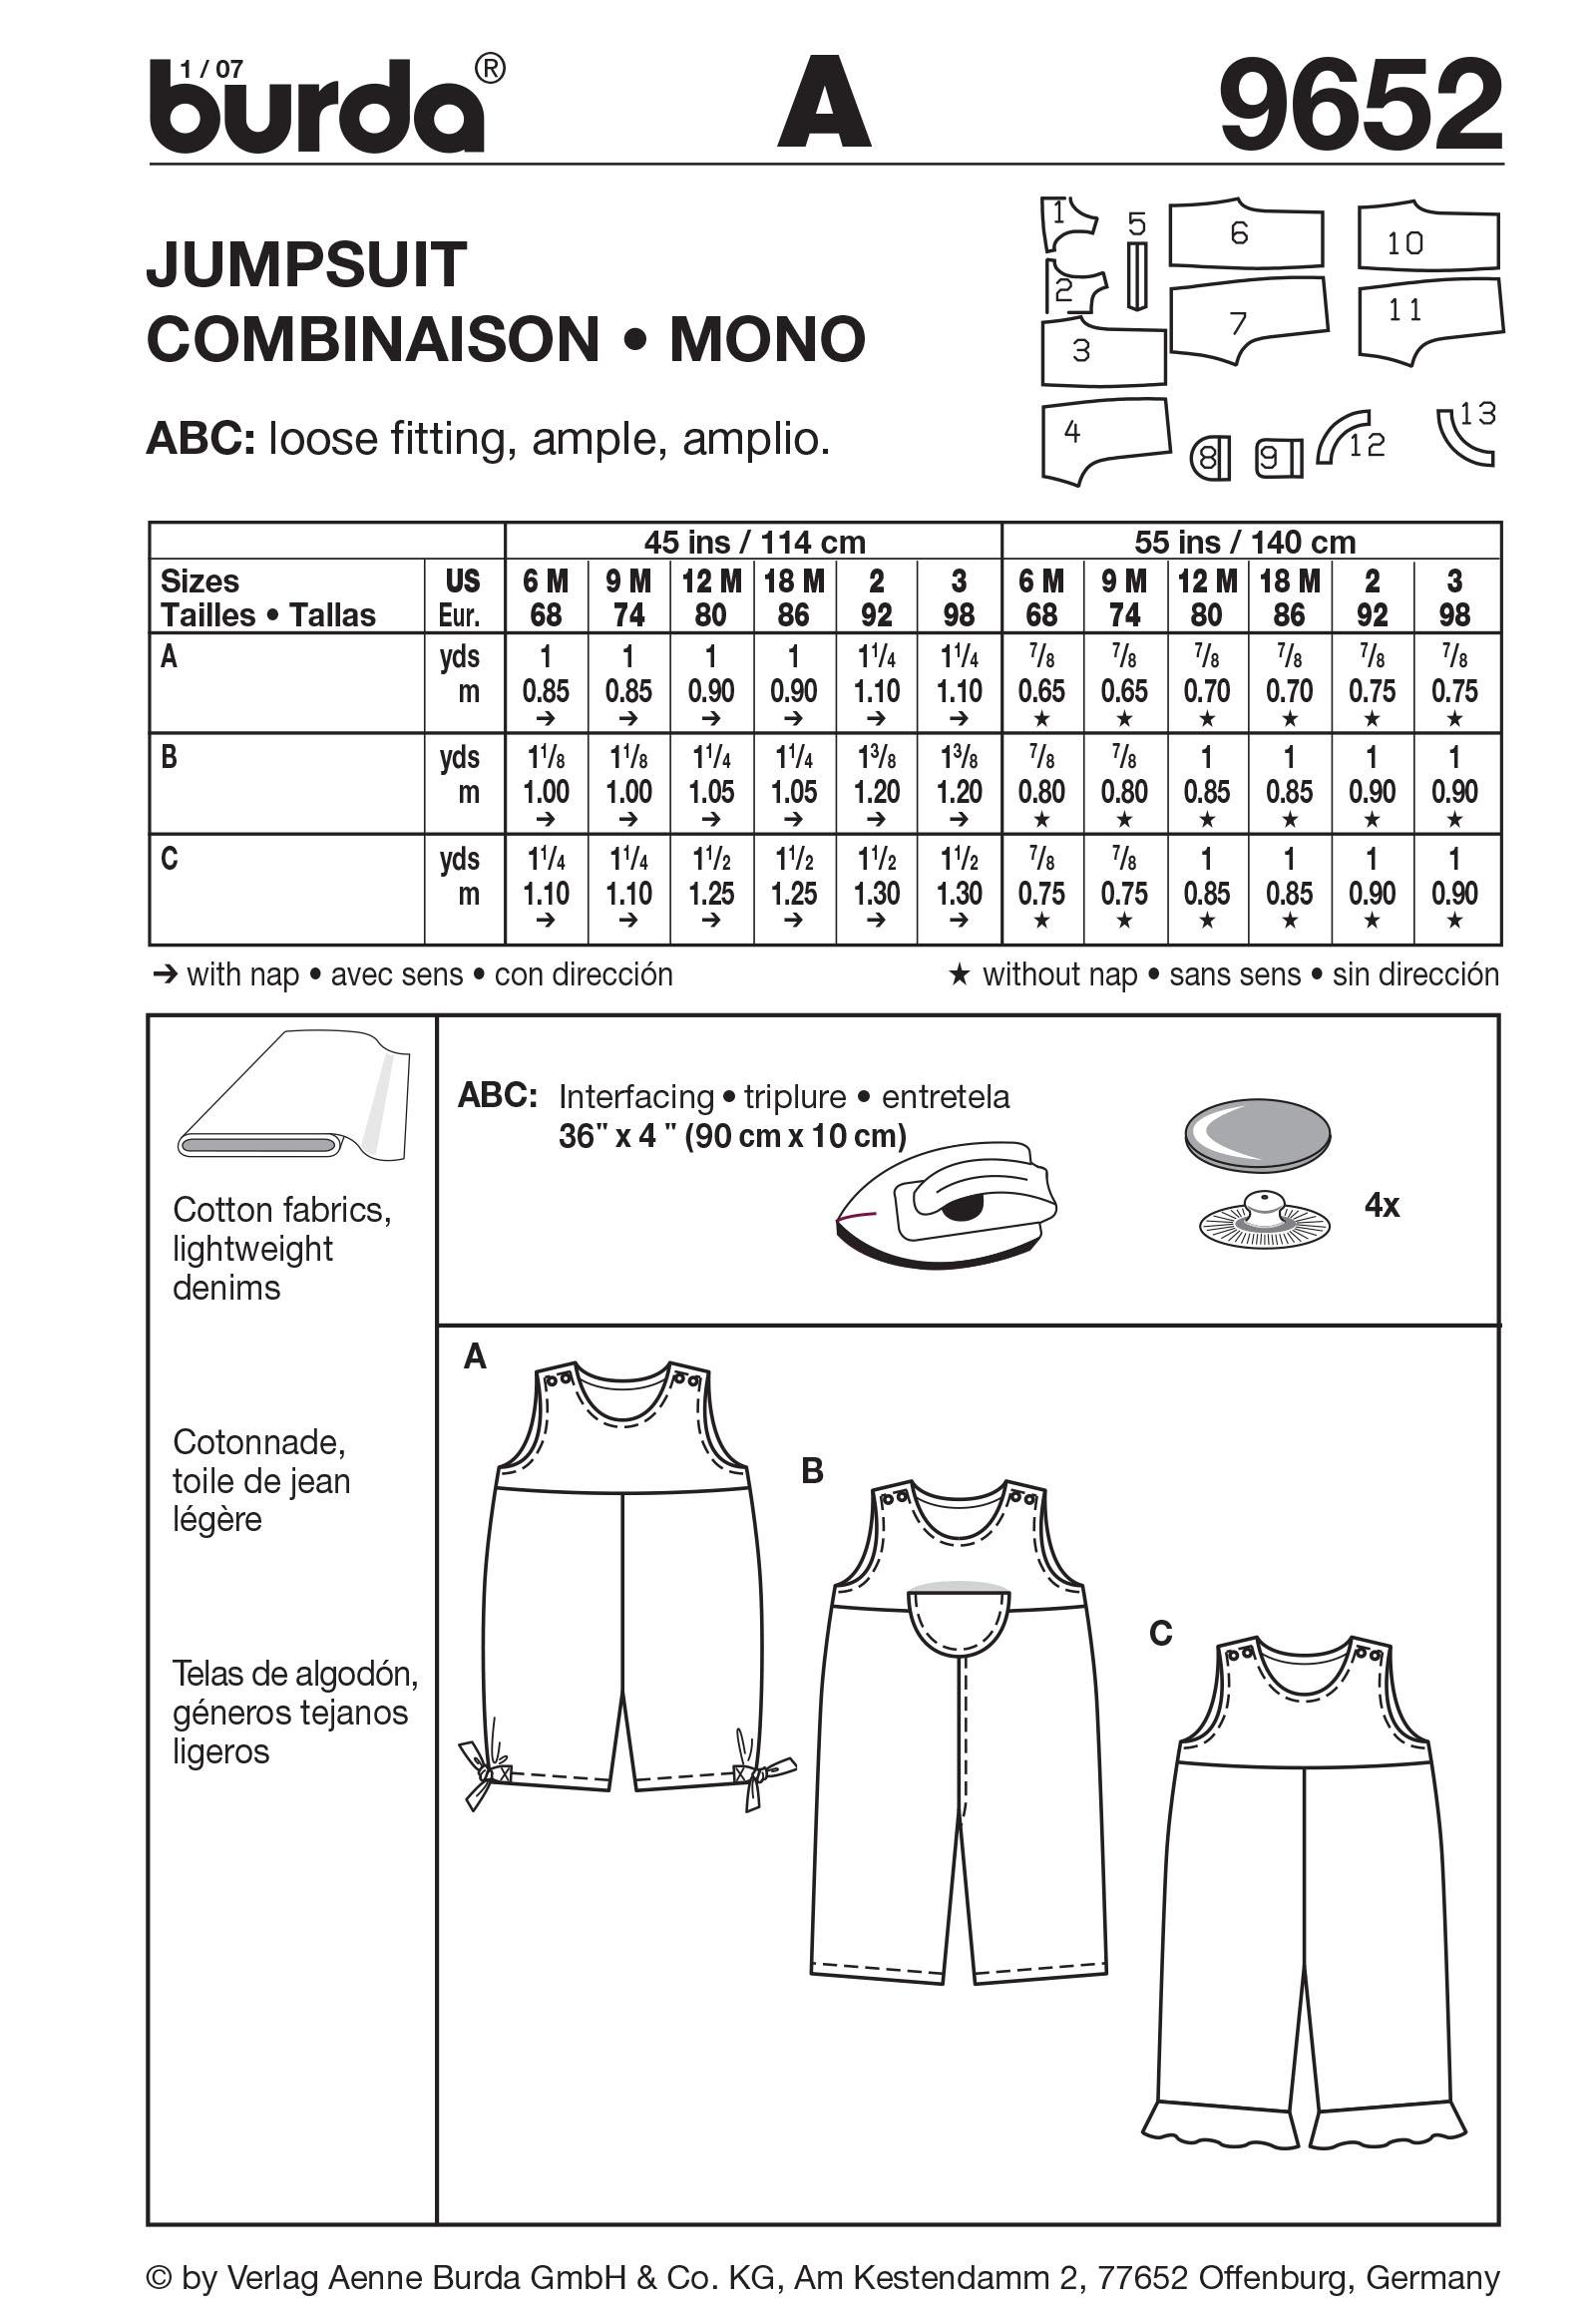 Burda B9652 Jumpsuit Sewing Pattern